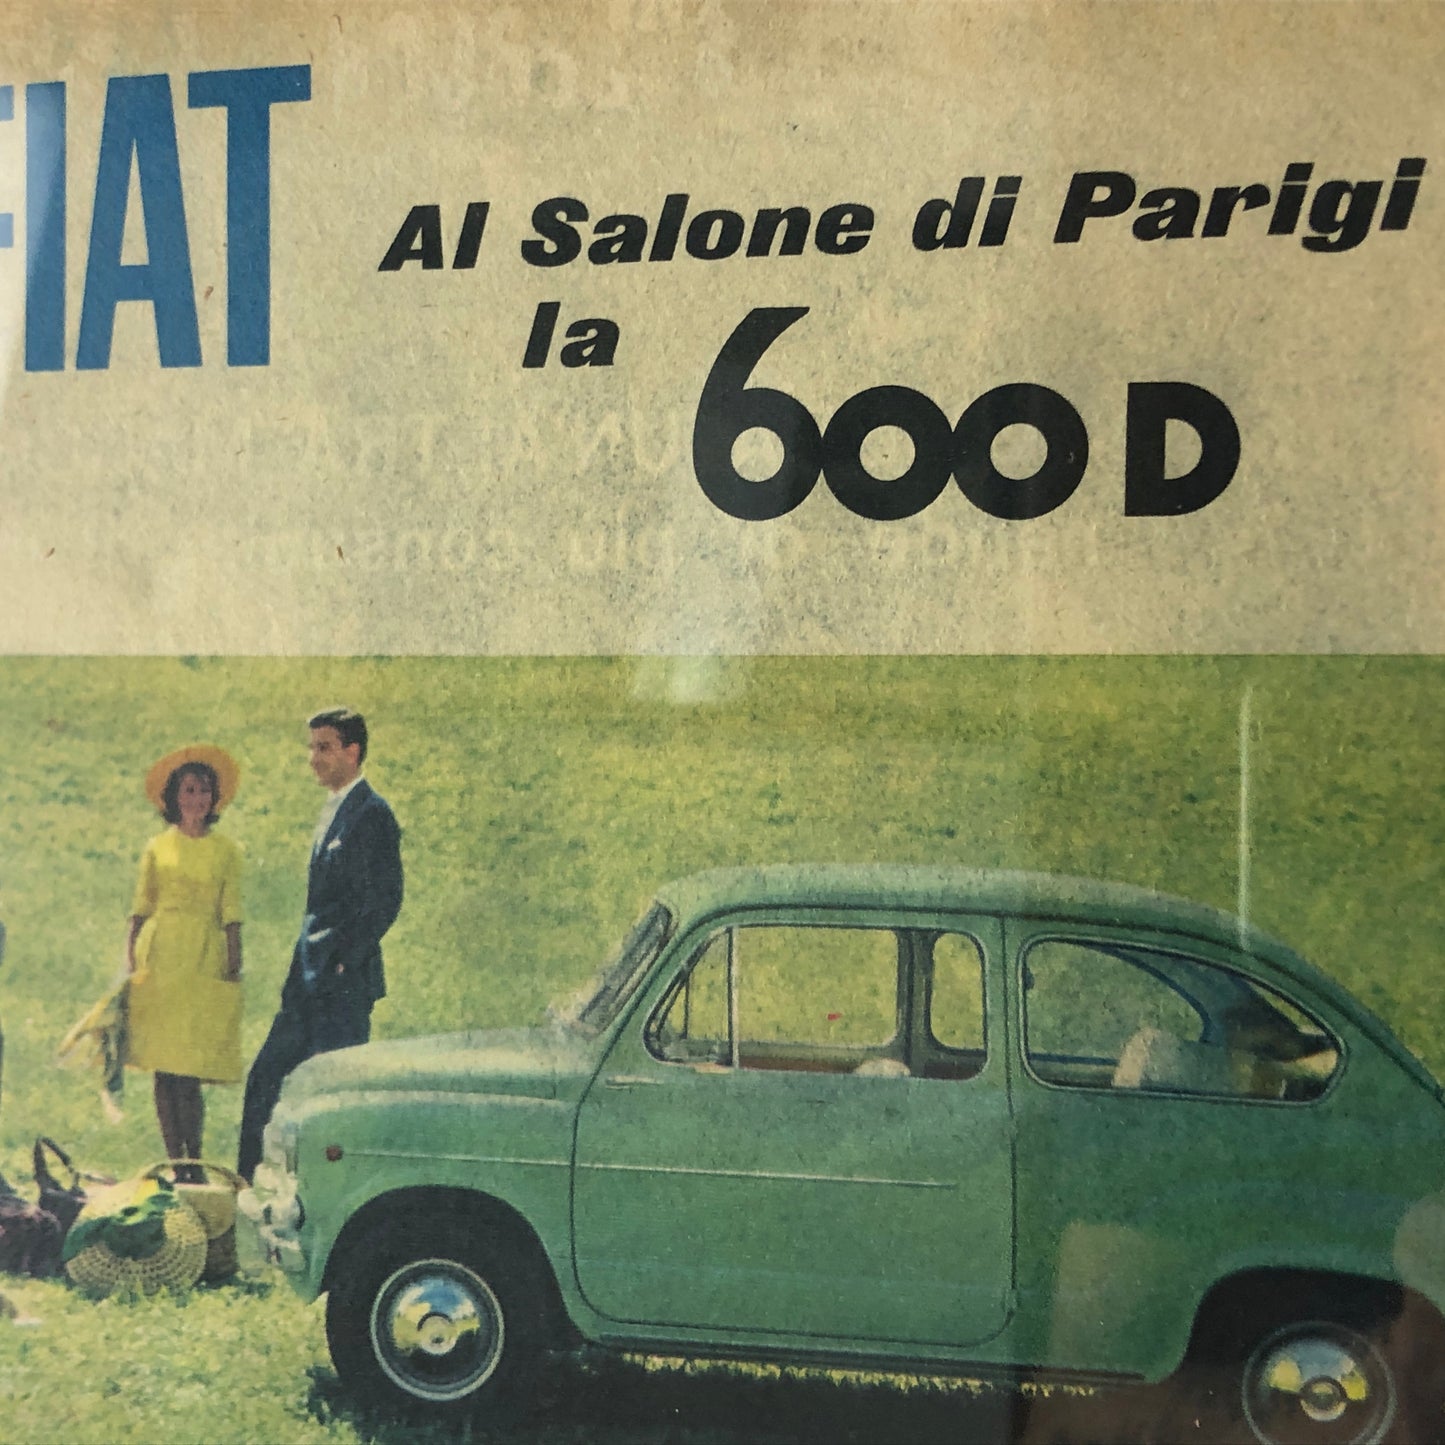 FIAT, Pubblicità Anno 1960 FIAT 600 D Salone dell'Automobile di Parigi